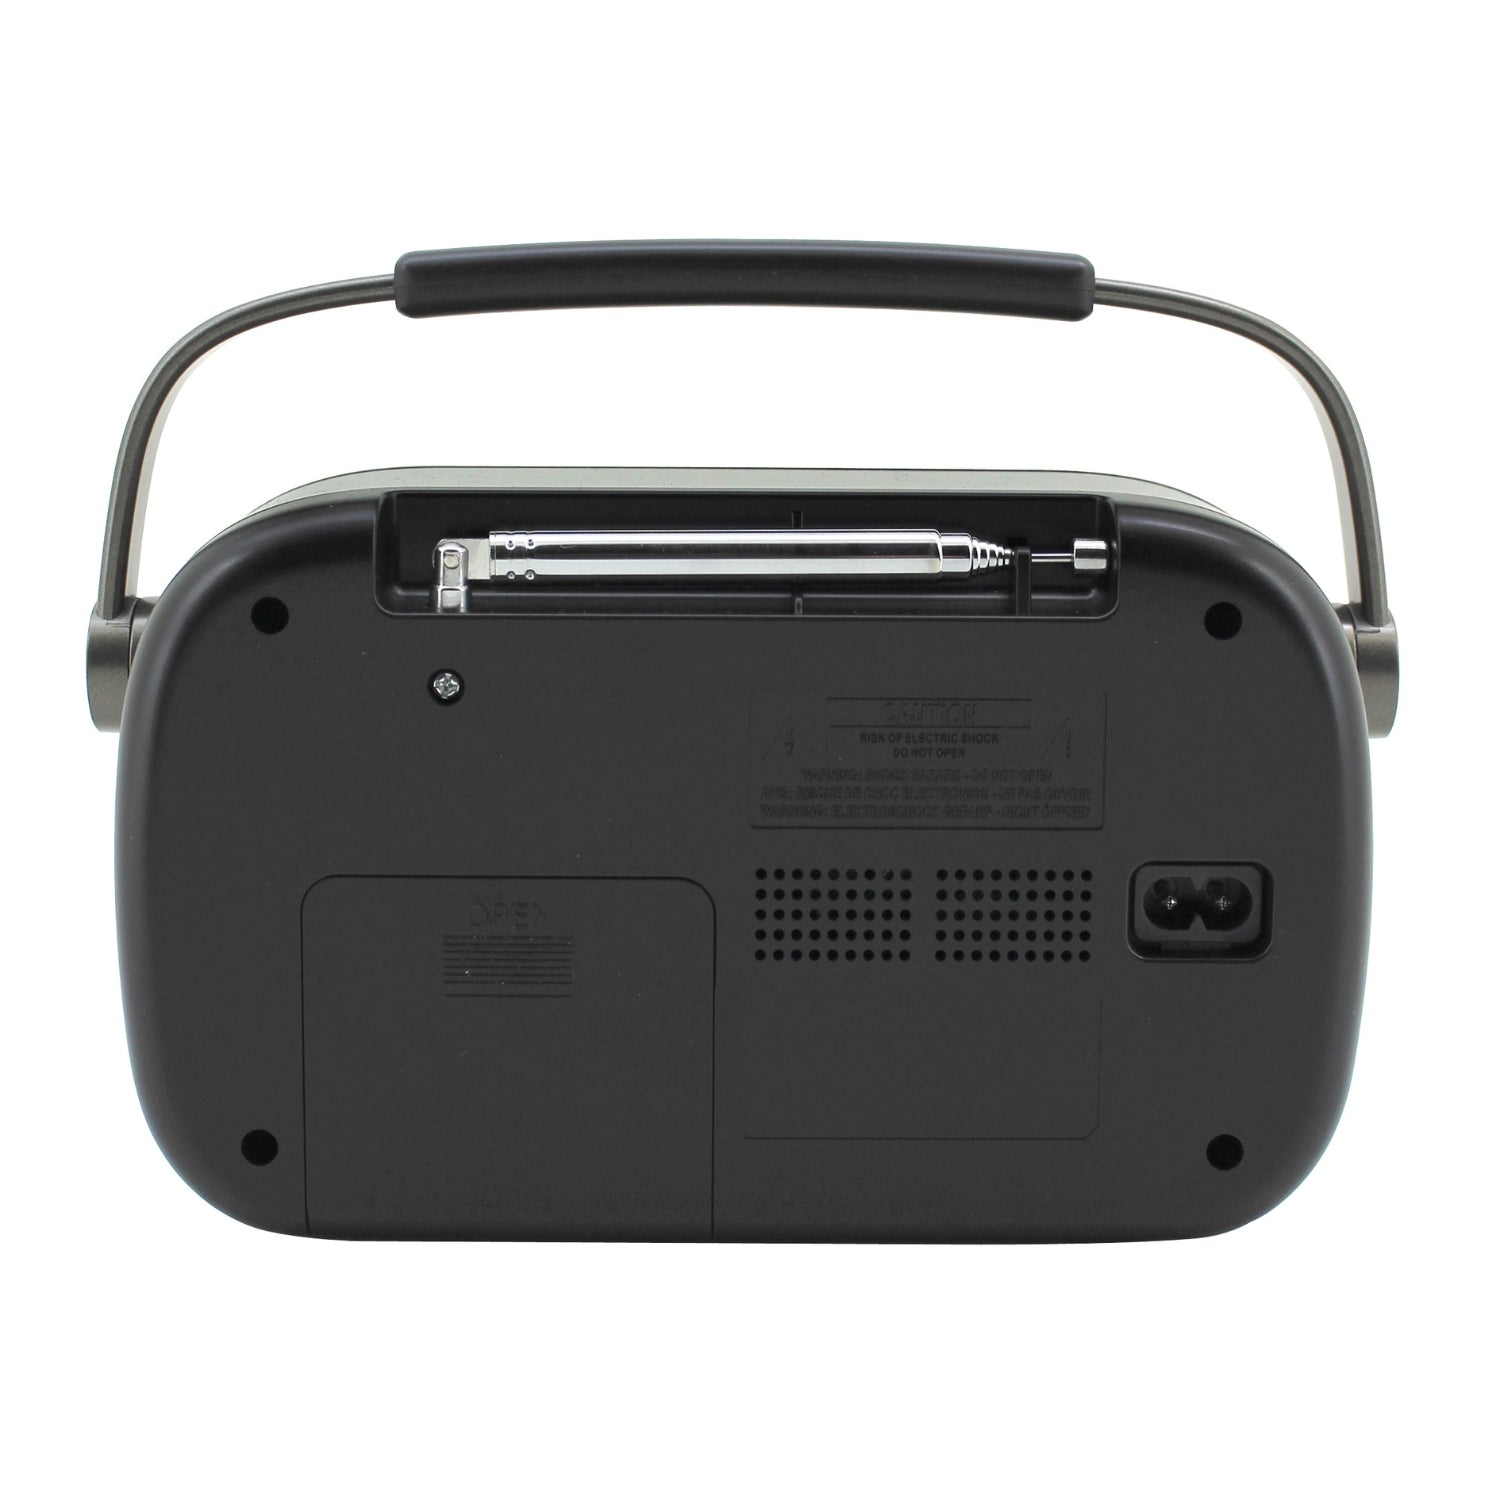 Soundmaster DAB280SW radio numérique portable DAB+ et FM RDS avec prise casque